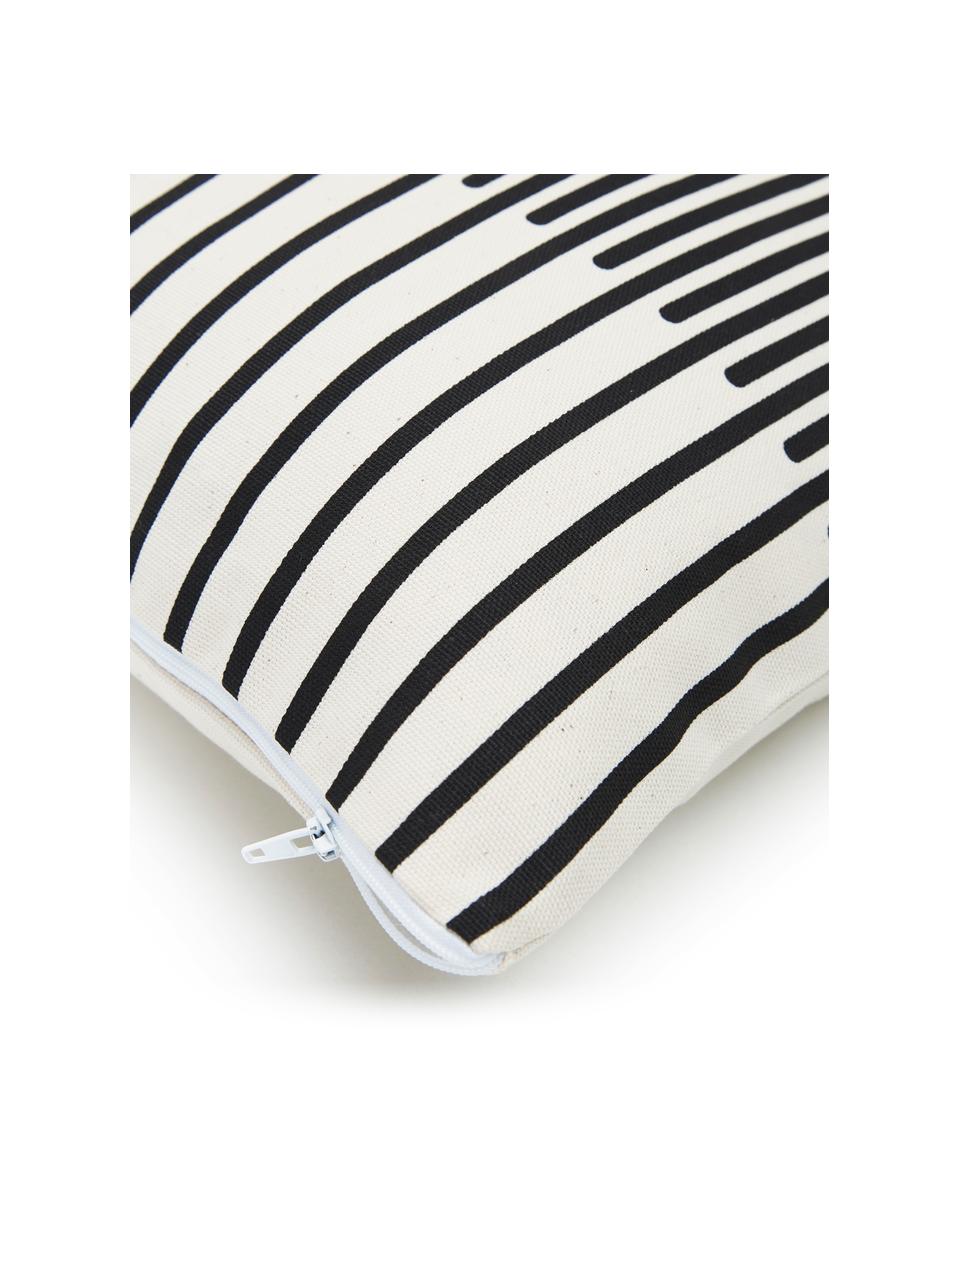 Federa arredo fantasia color nero/bianco crema Zella, 100% cotone, Bianco, nero, Larg. 45 x Lung. 45 cm